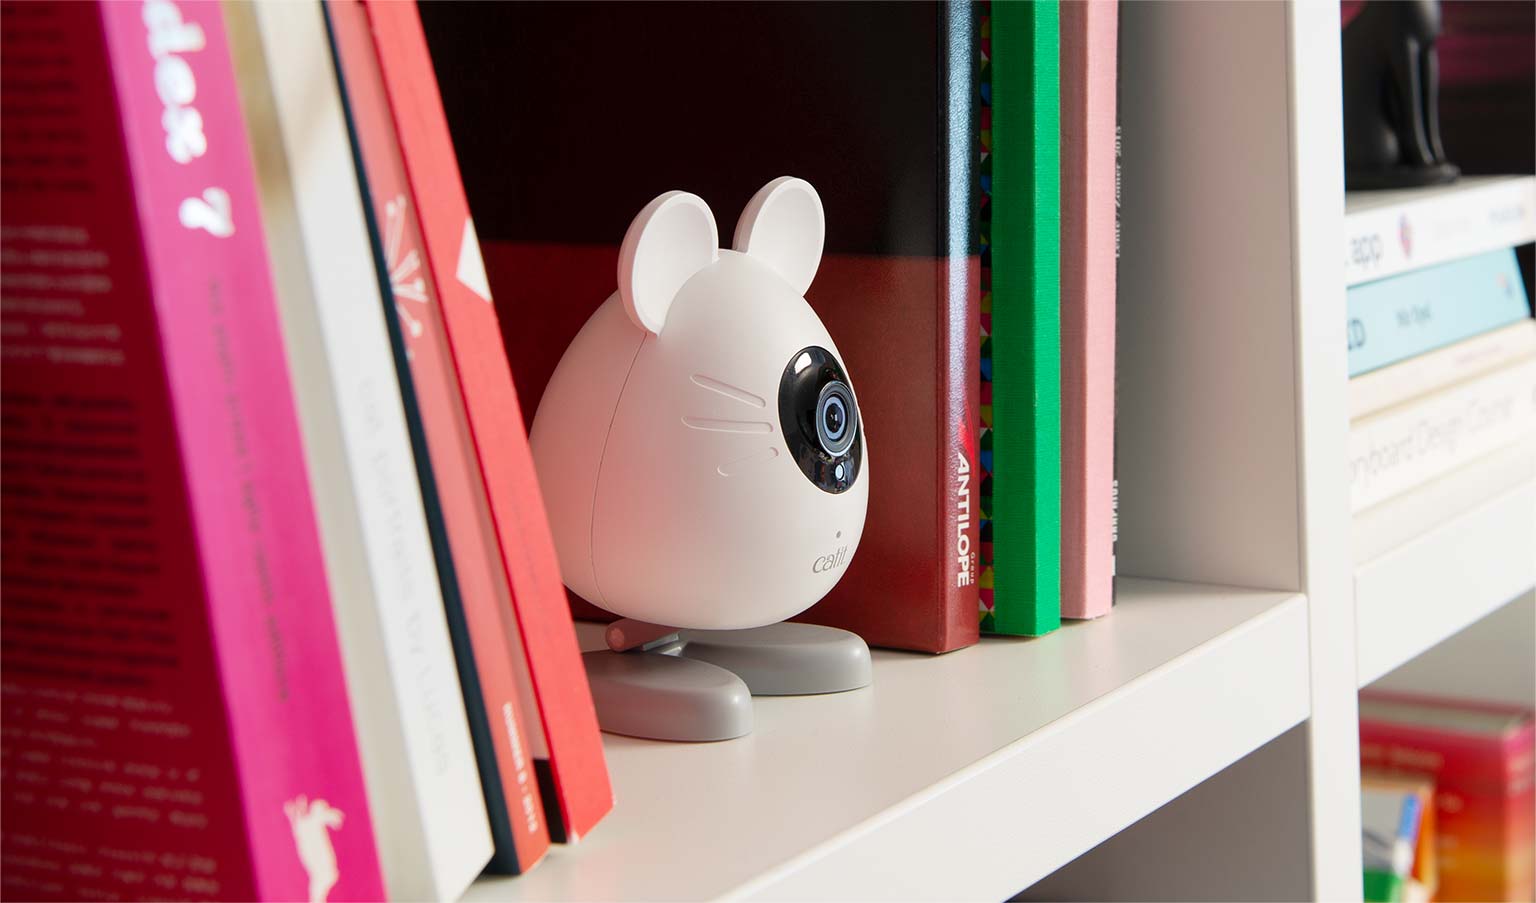 Kamera PIXI Smart w kształcie myszki na półce z książkami